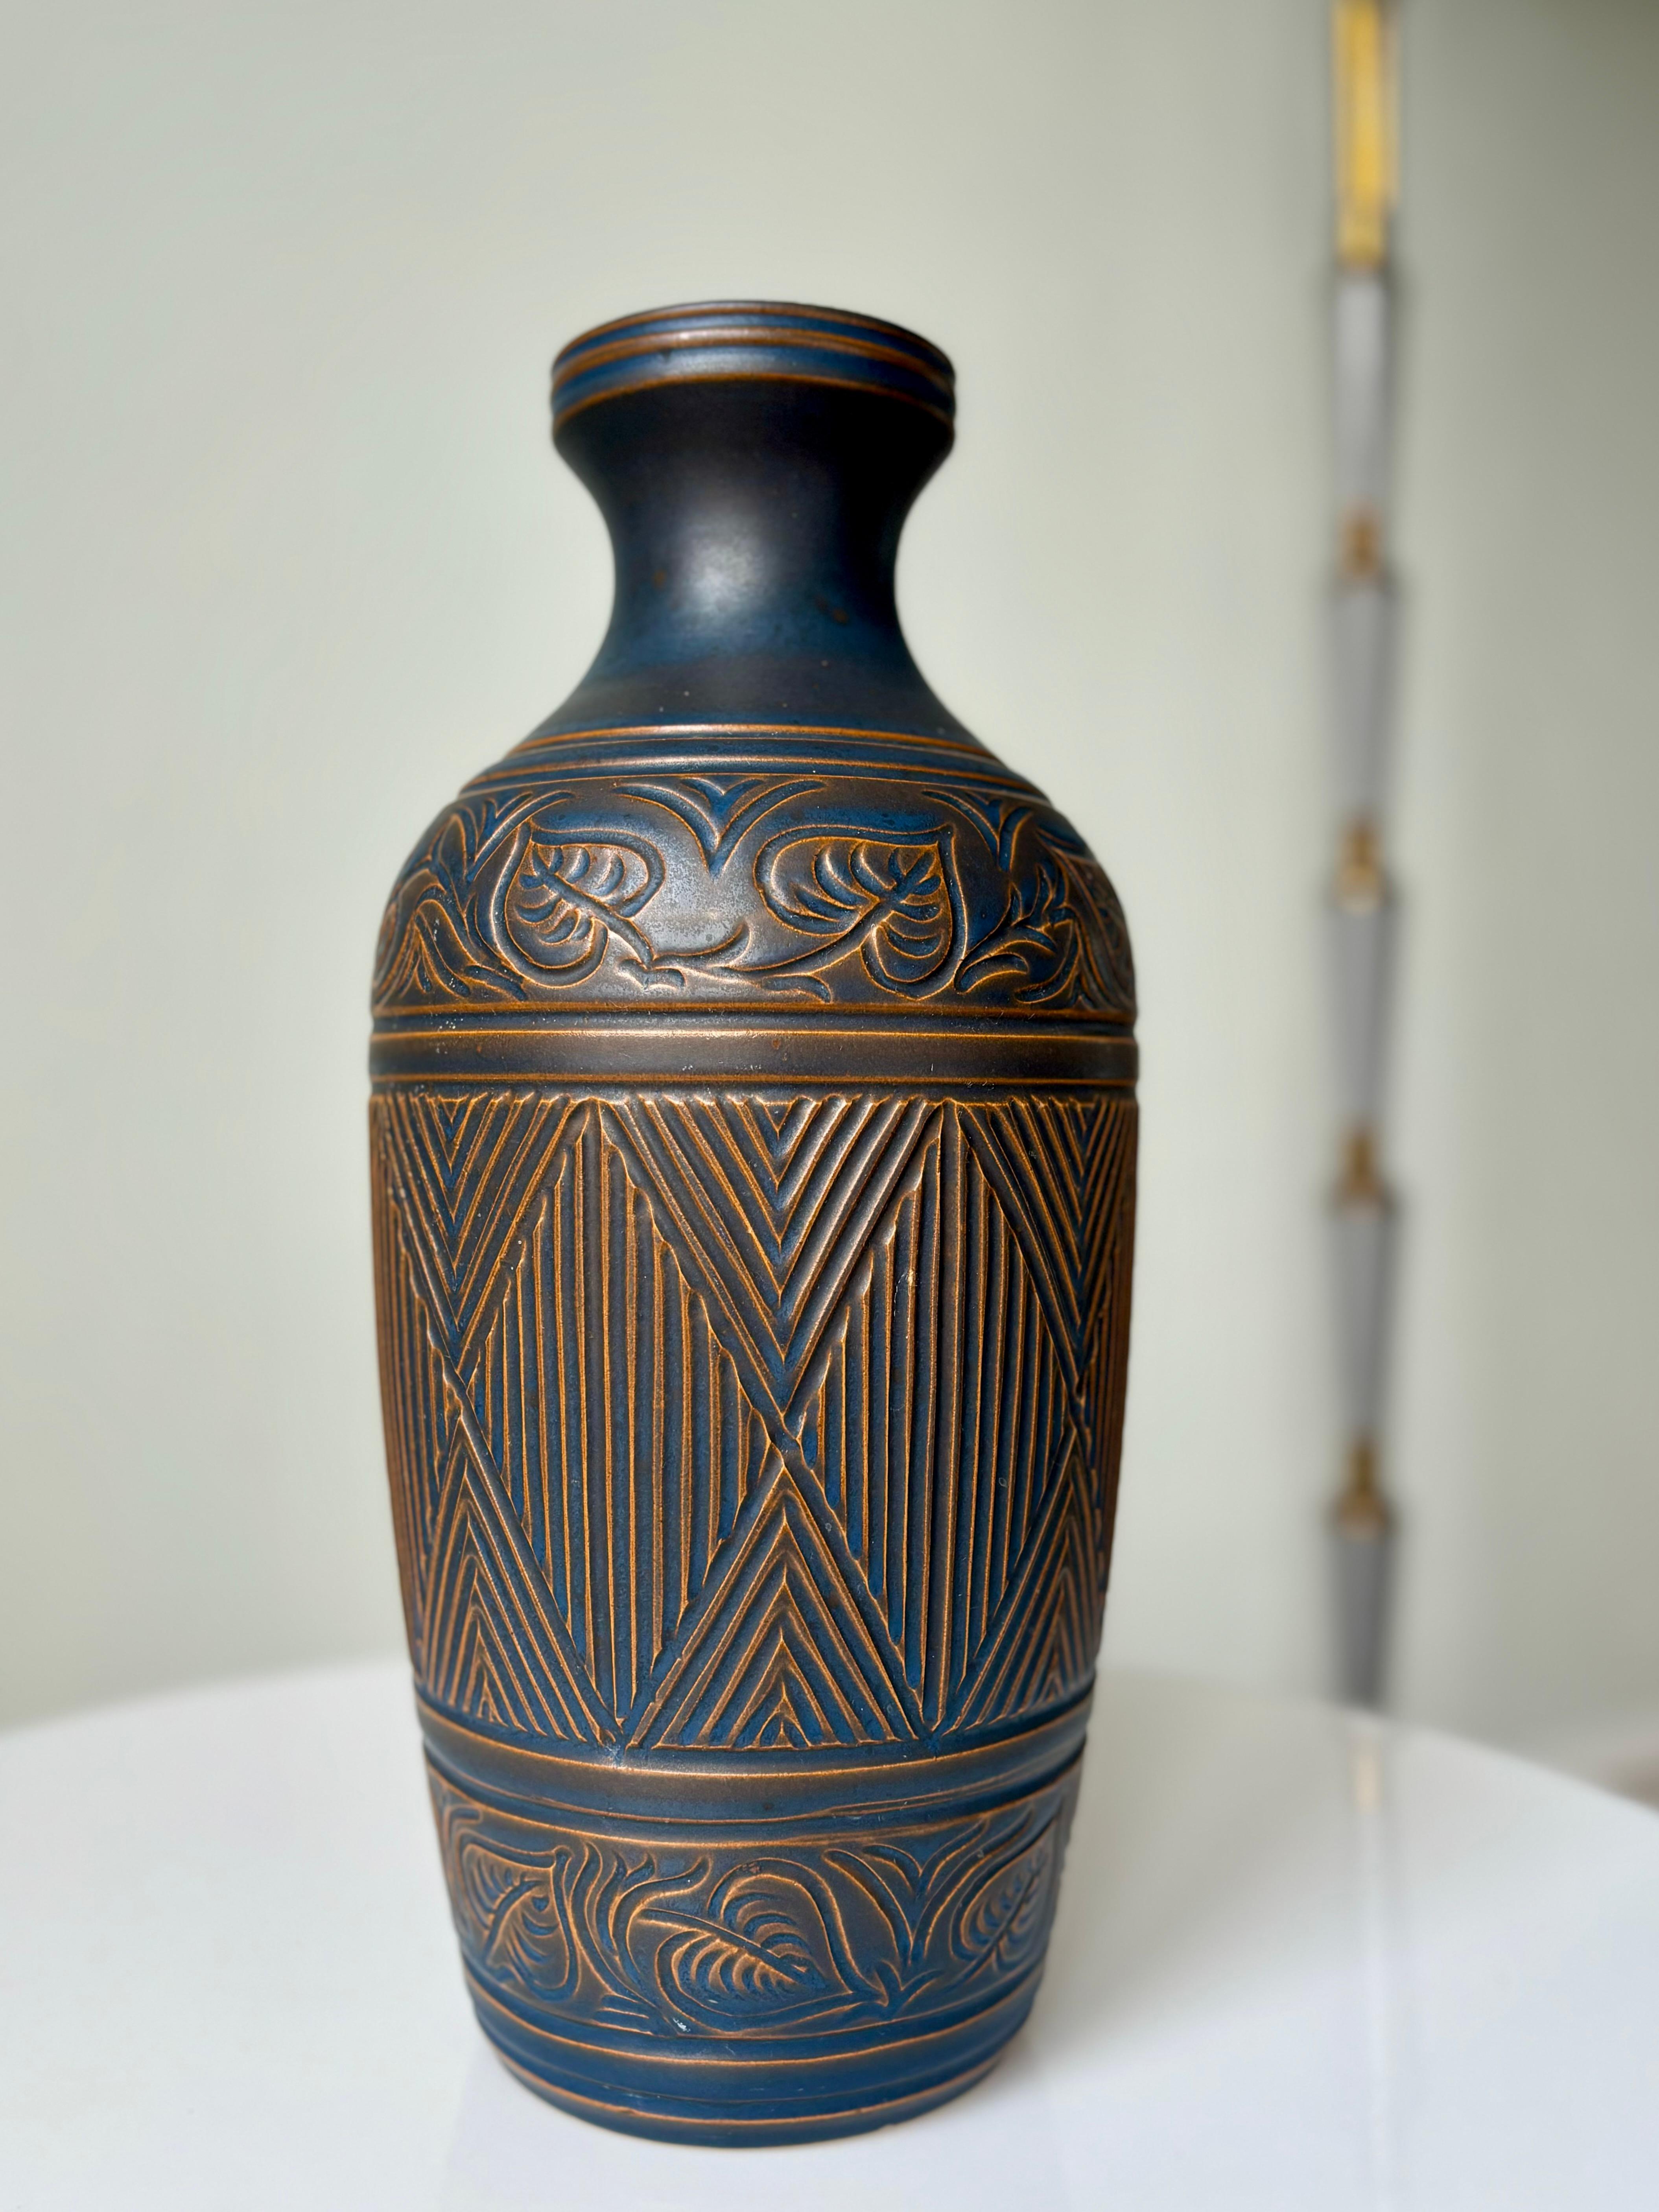 Grand vase danois en céramique décorée de style Art déco, réalisé par Bromølle Keramik en 1962. Les motifs floraux et les lignes complexes sont moulés et sculptés à la main. Glaçure semi-mate brun caramel et bleu foncé poussiéreux. Signé et daté